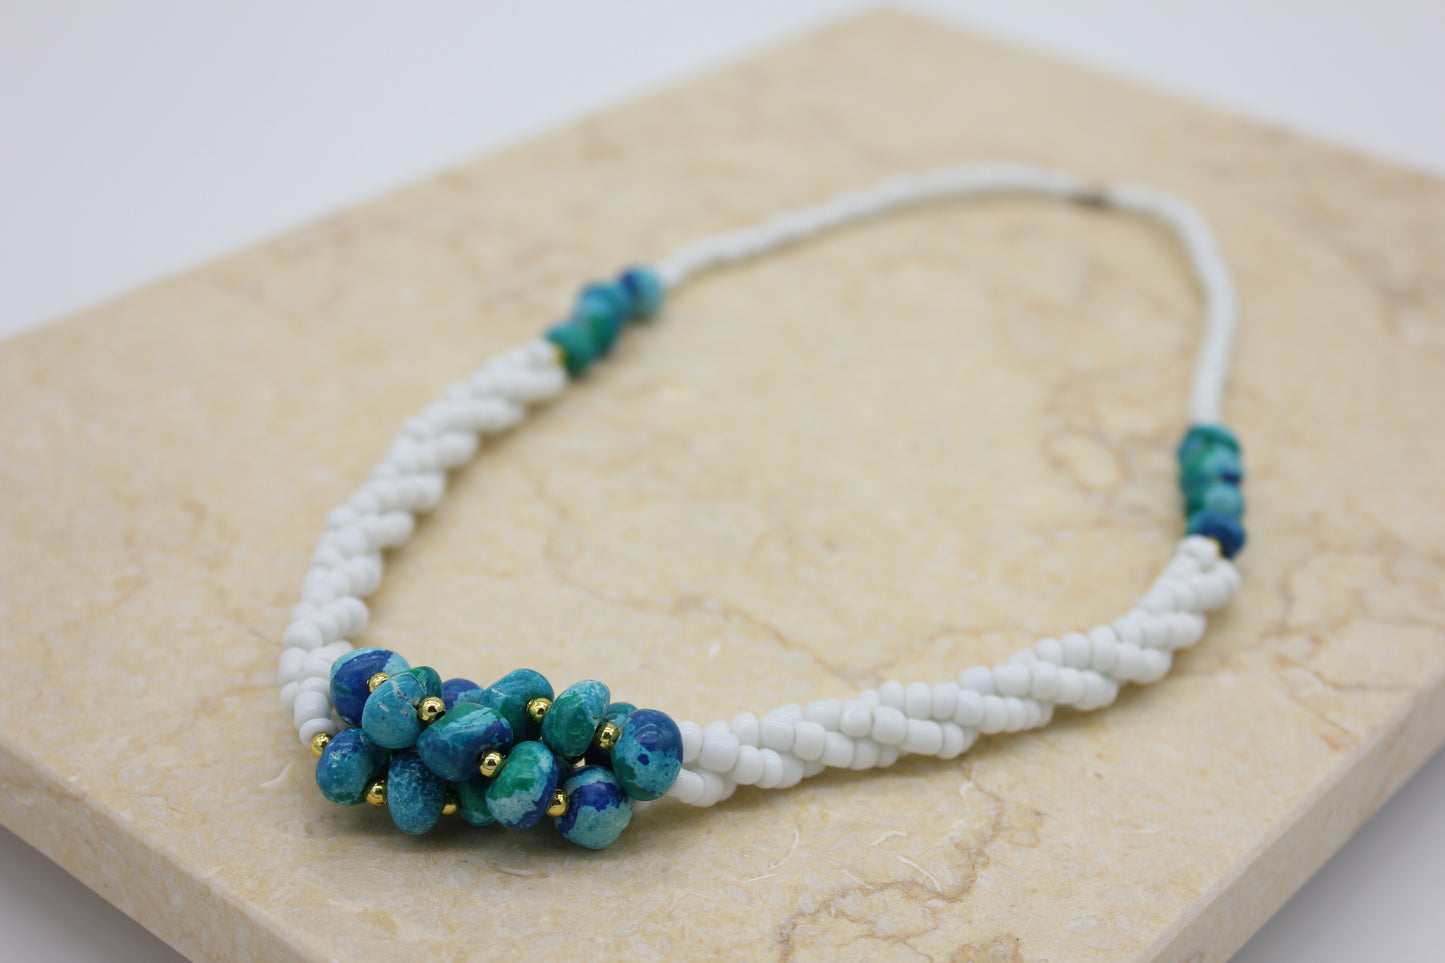 Tayrona Stone necklace - Azul